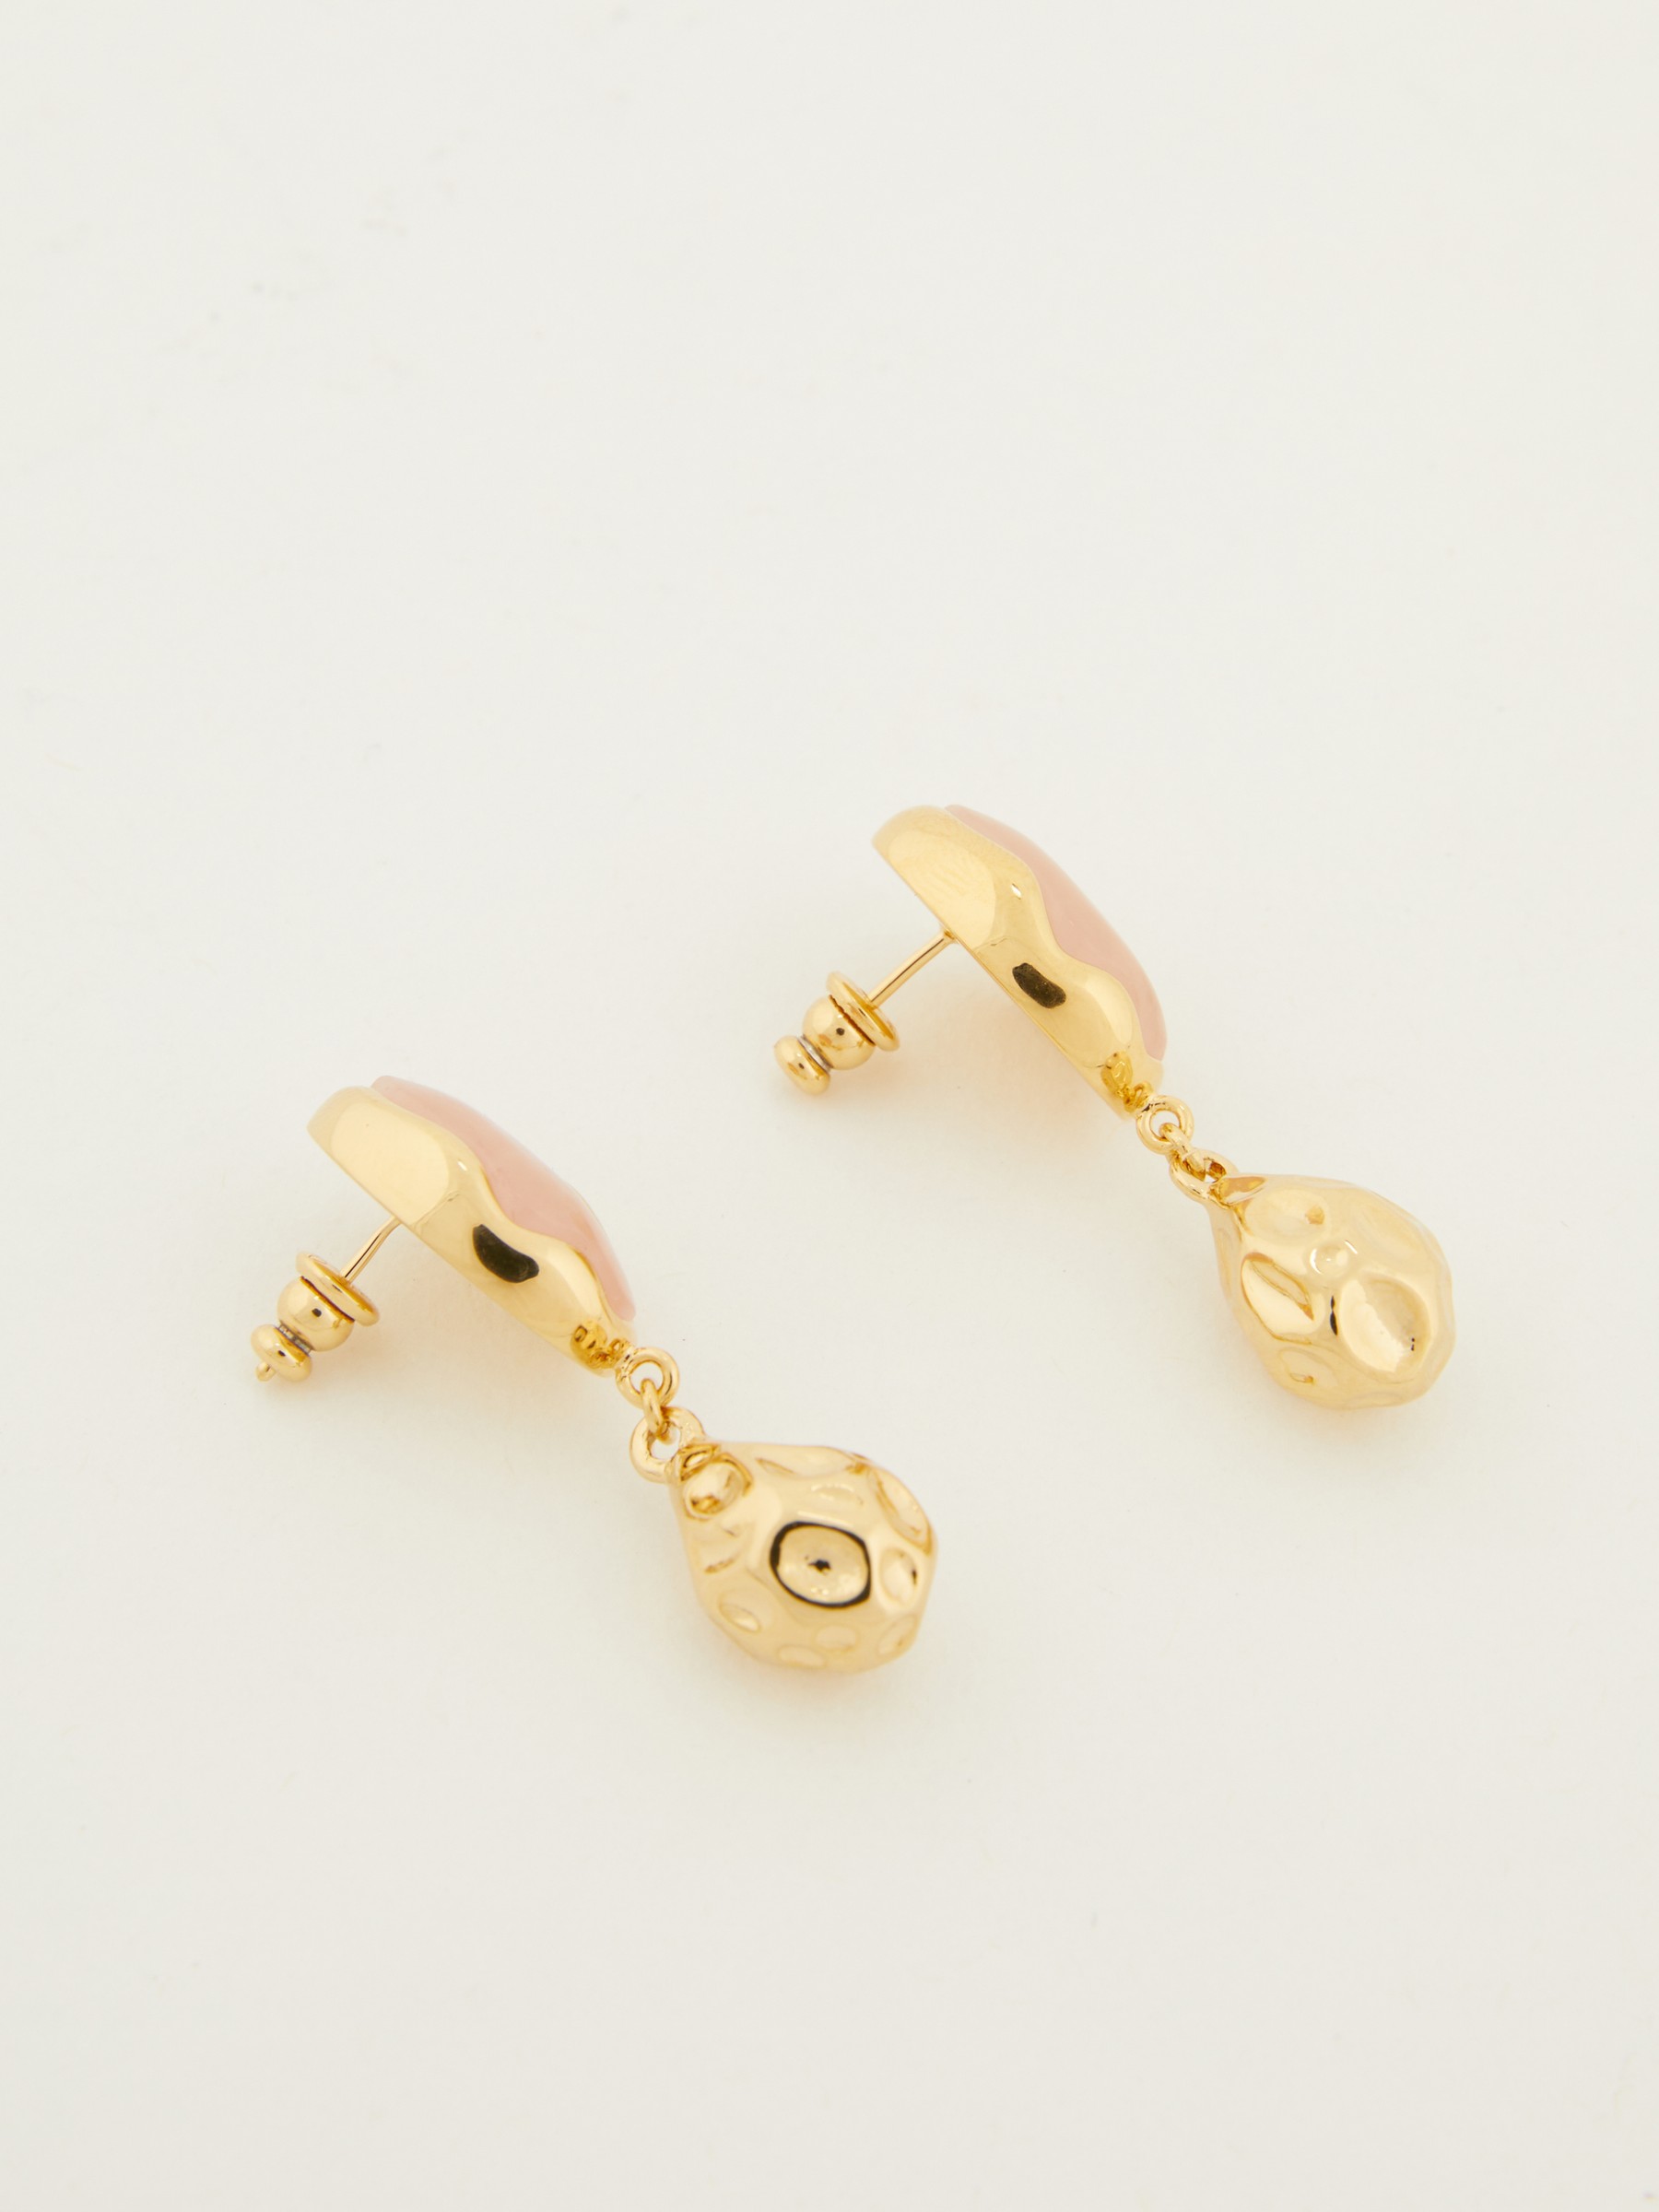 Chloé Gold Sybil Earrings